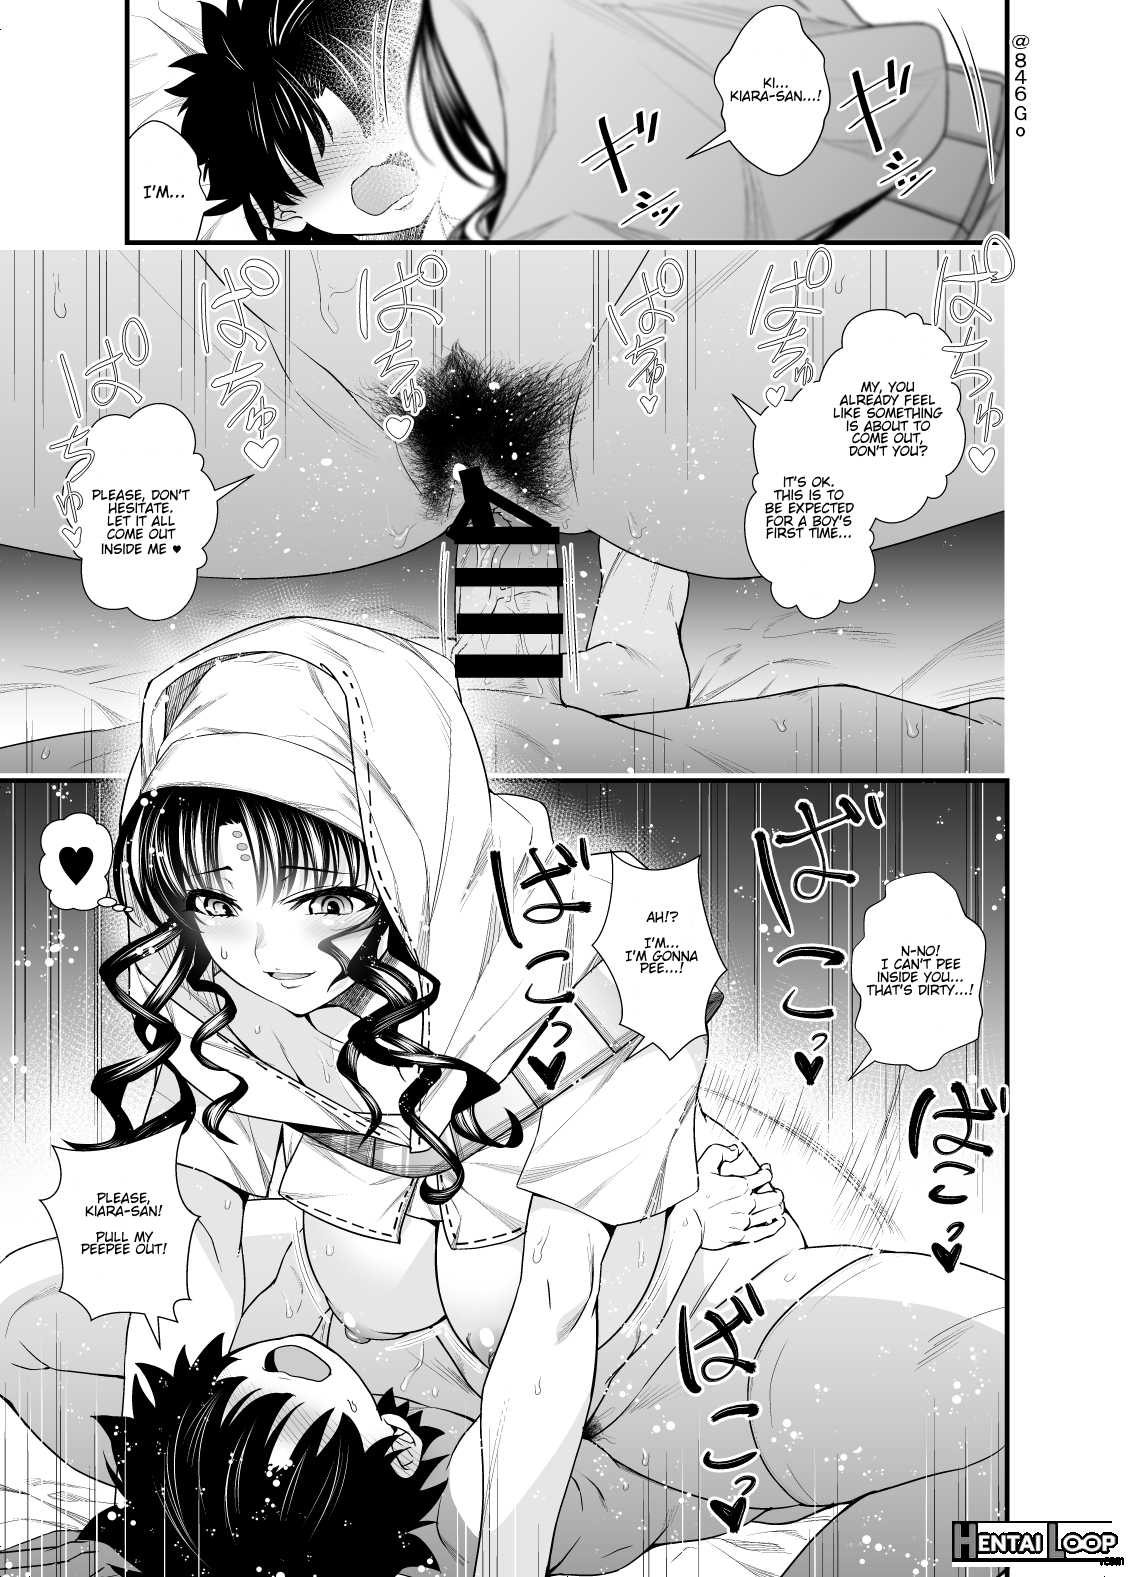 Kiara-san's Oneshota Manga #00 page 1